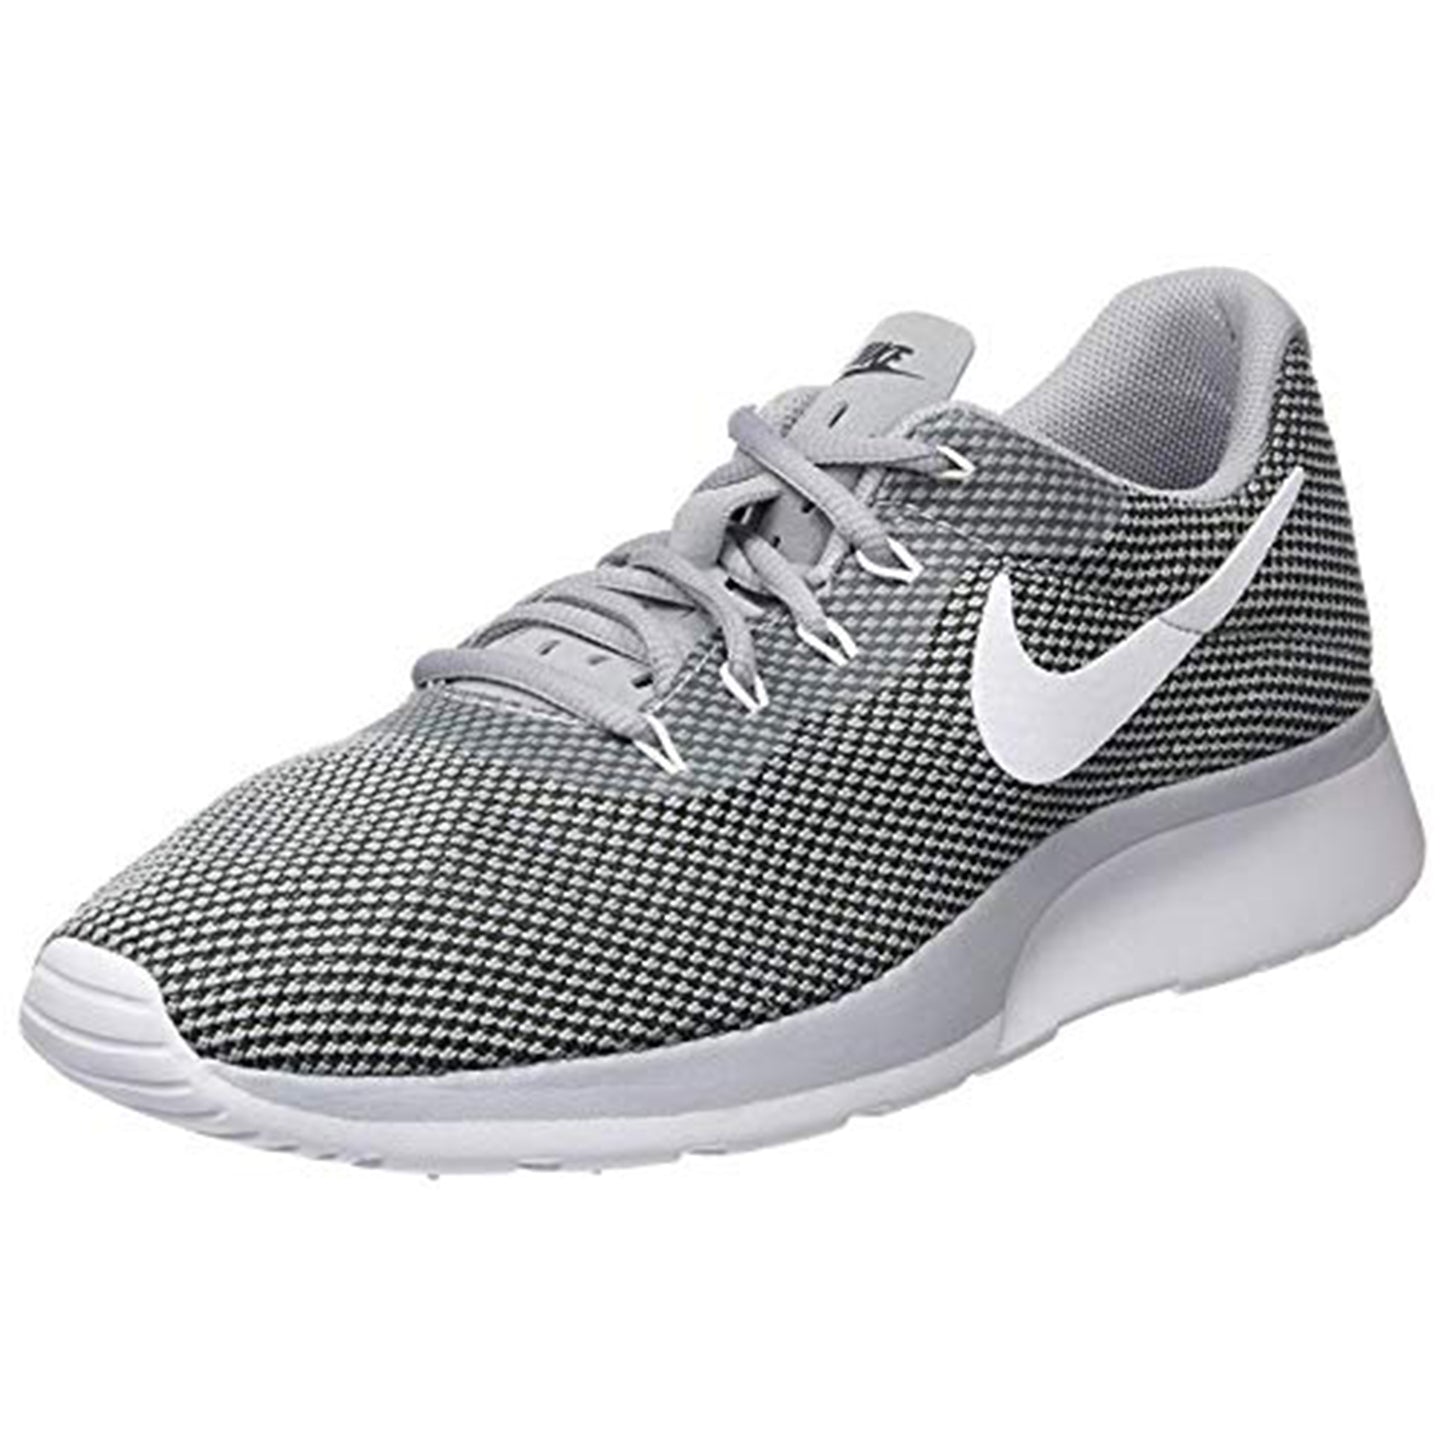 Nike Tanjun Racer Size 10 - Men 921669-001 Wolf Grey/White/Black